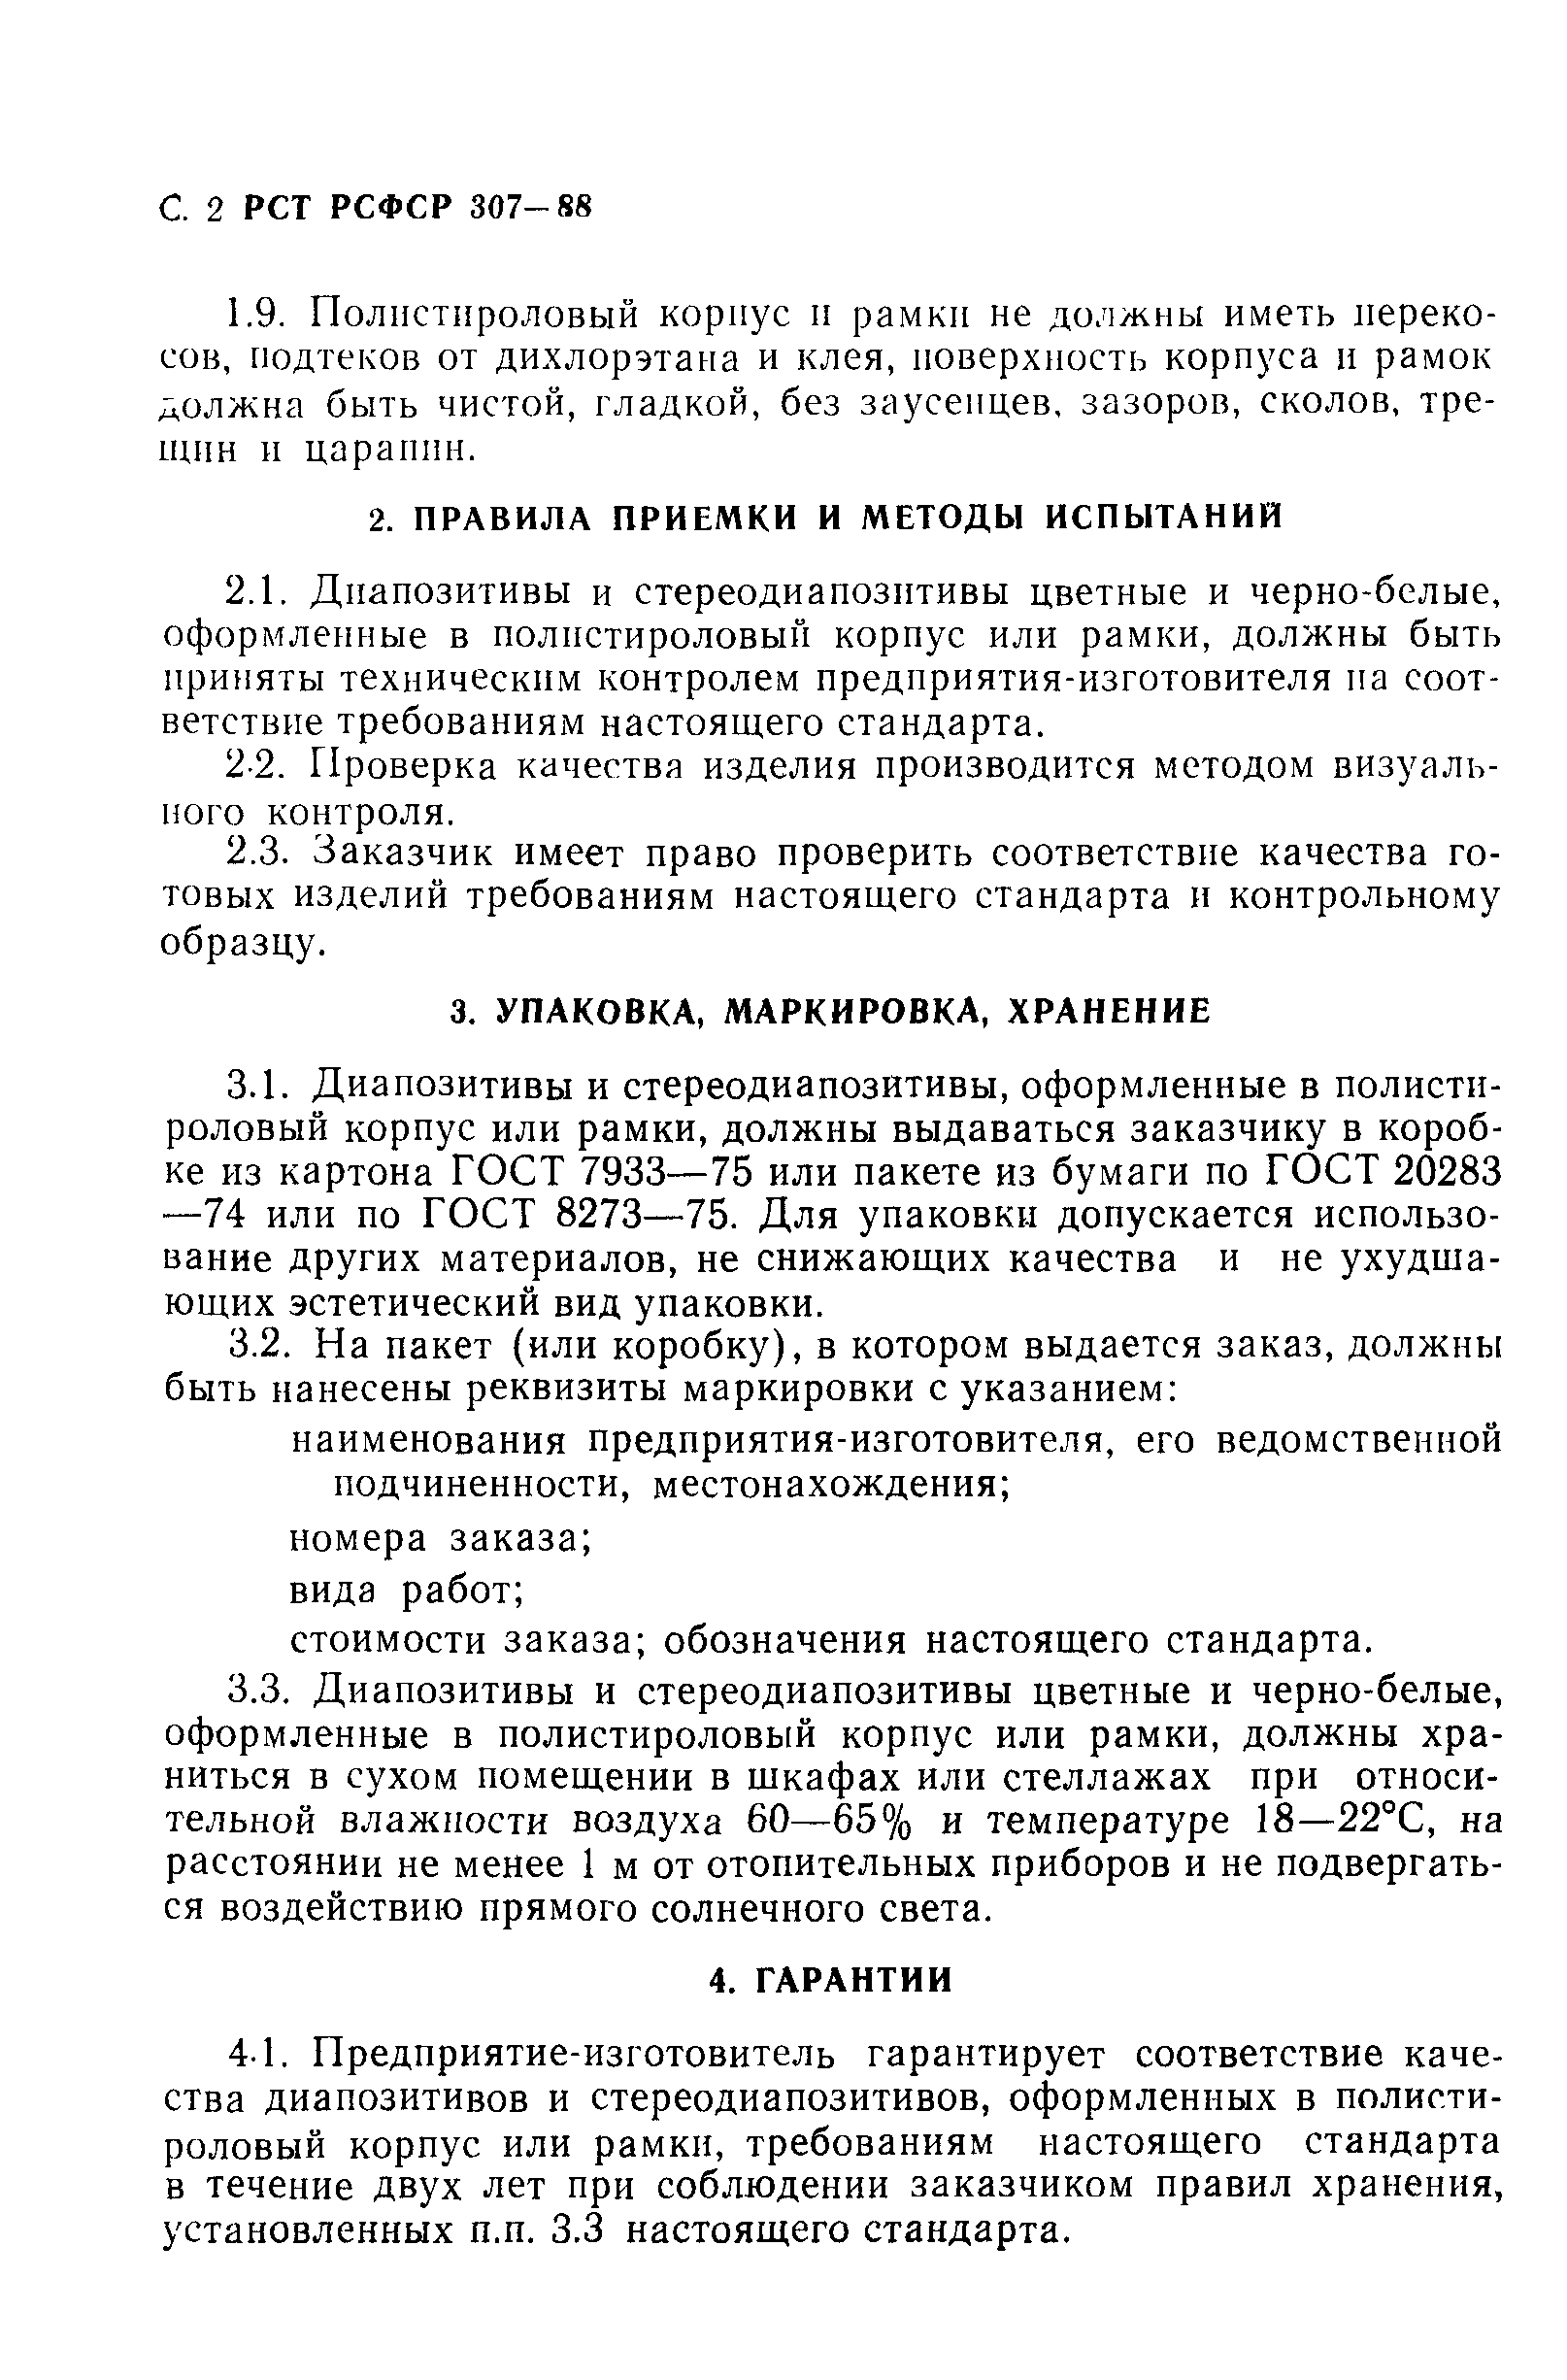 РСТ РСФСР 307-88